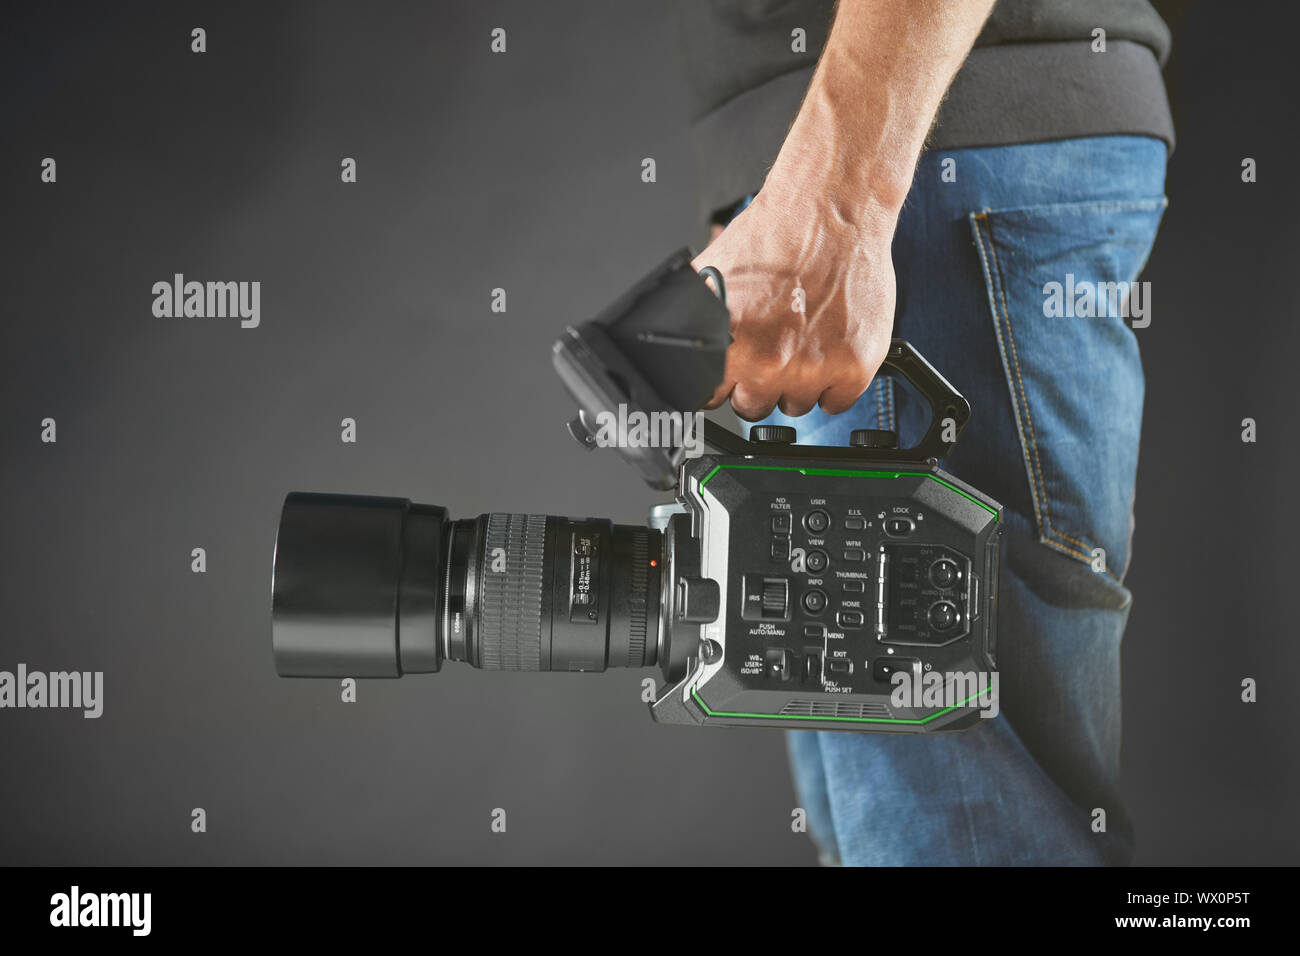 Kiev, Ukraine - 22 Avril 2018 : caméraman tenant son caméscope professionnel Panasonic AU-EVA1 en studio Banque D'Images